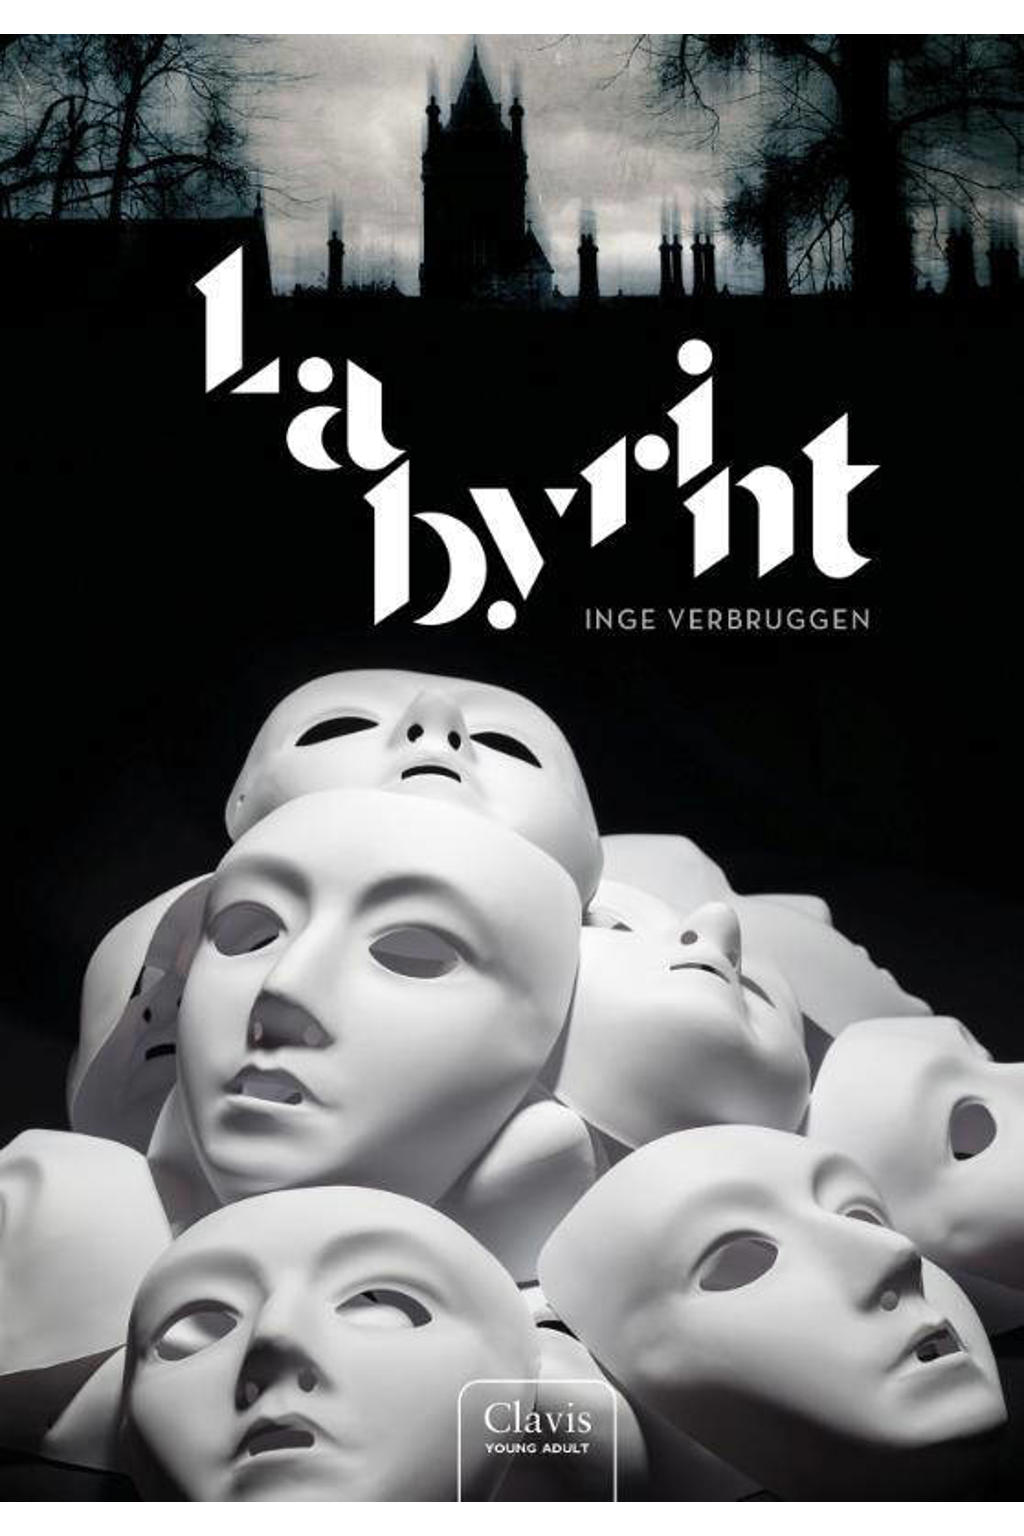 Labyrint - Inge Verbruggen